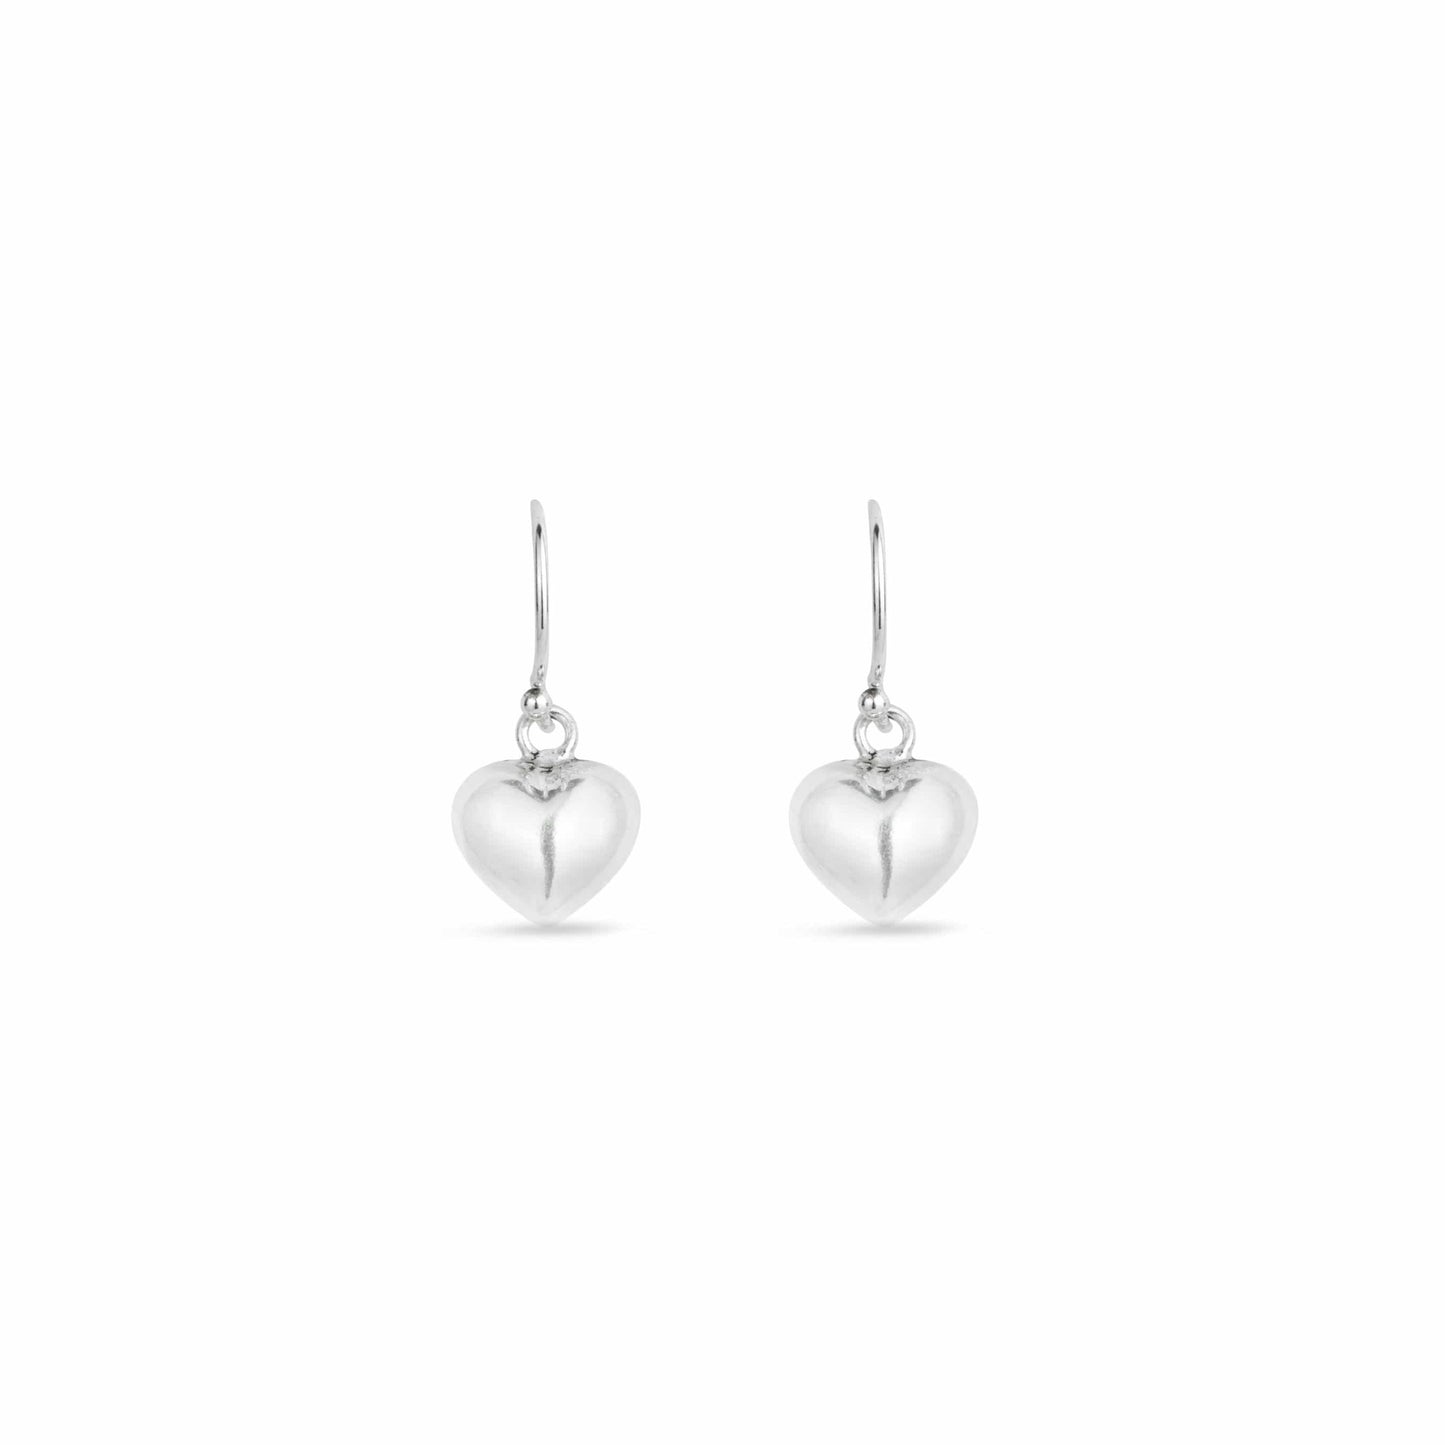 Silver Puff Heart Earrings - Love & Lilly Jewellery